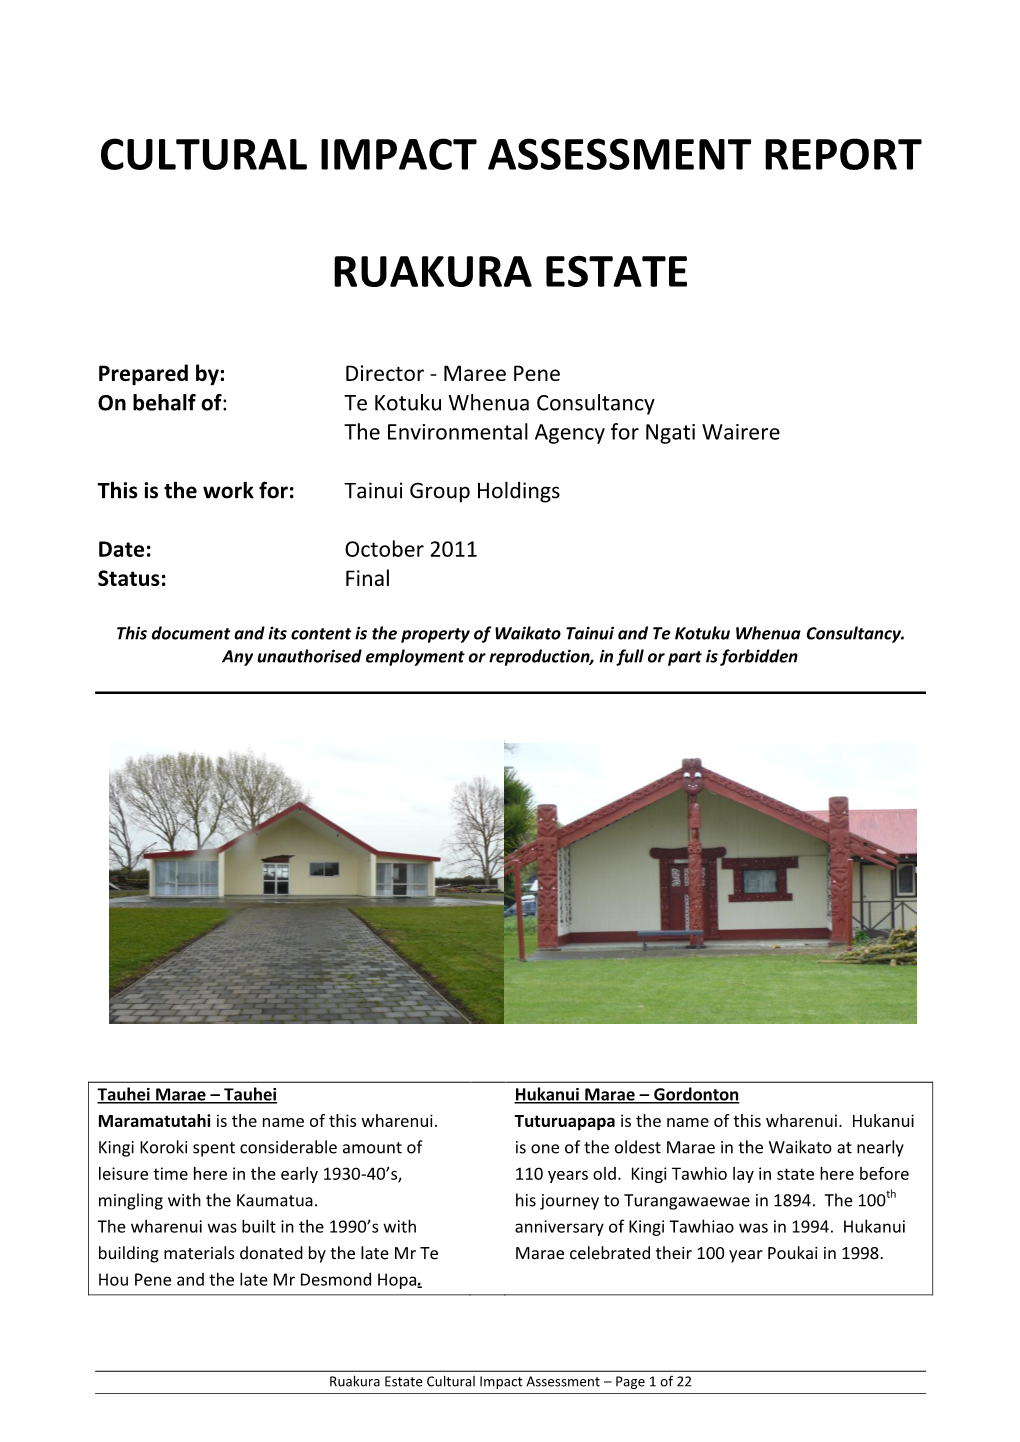 Cultural Impact Assessment Report Ruakura Estate